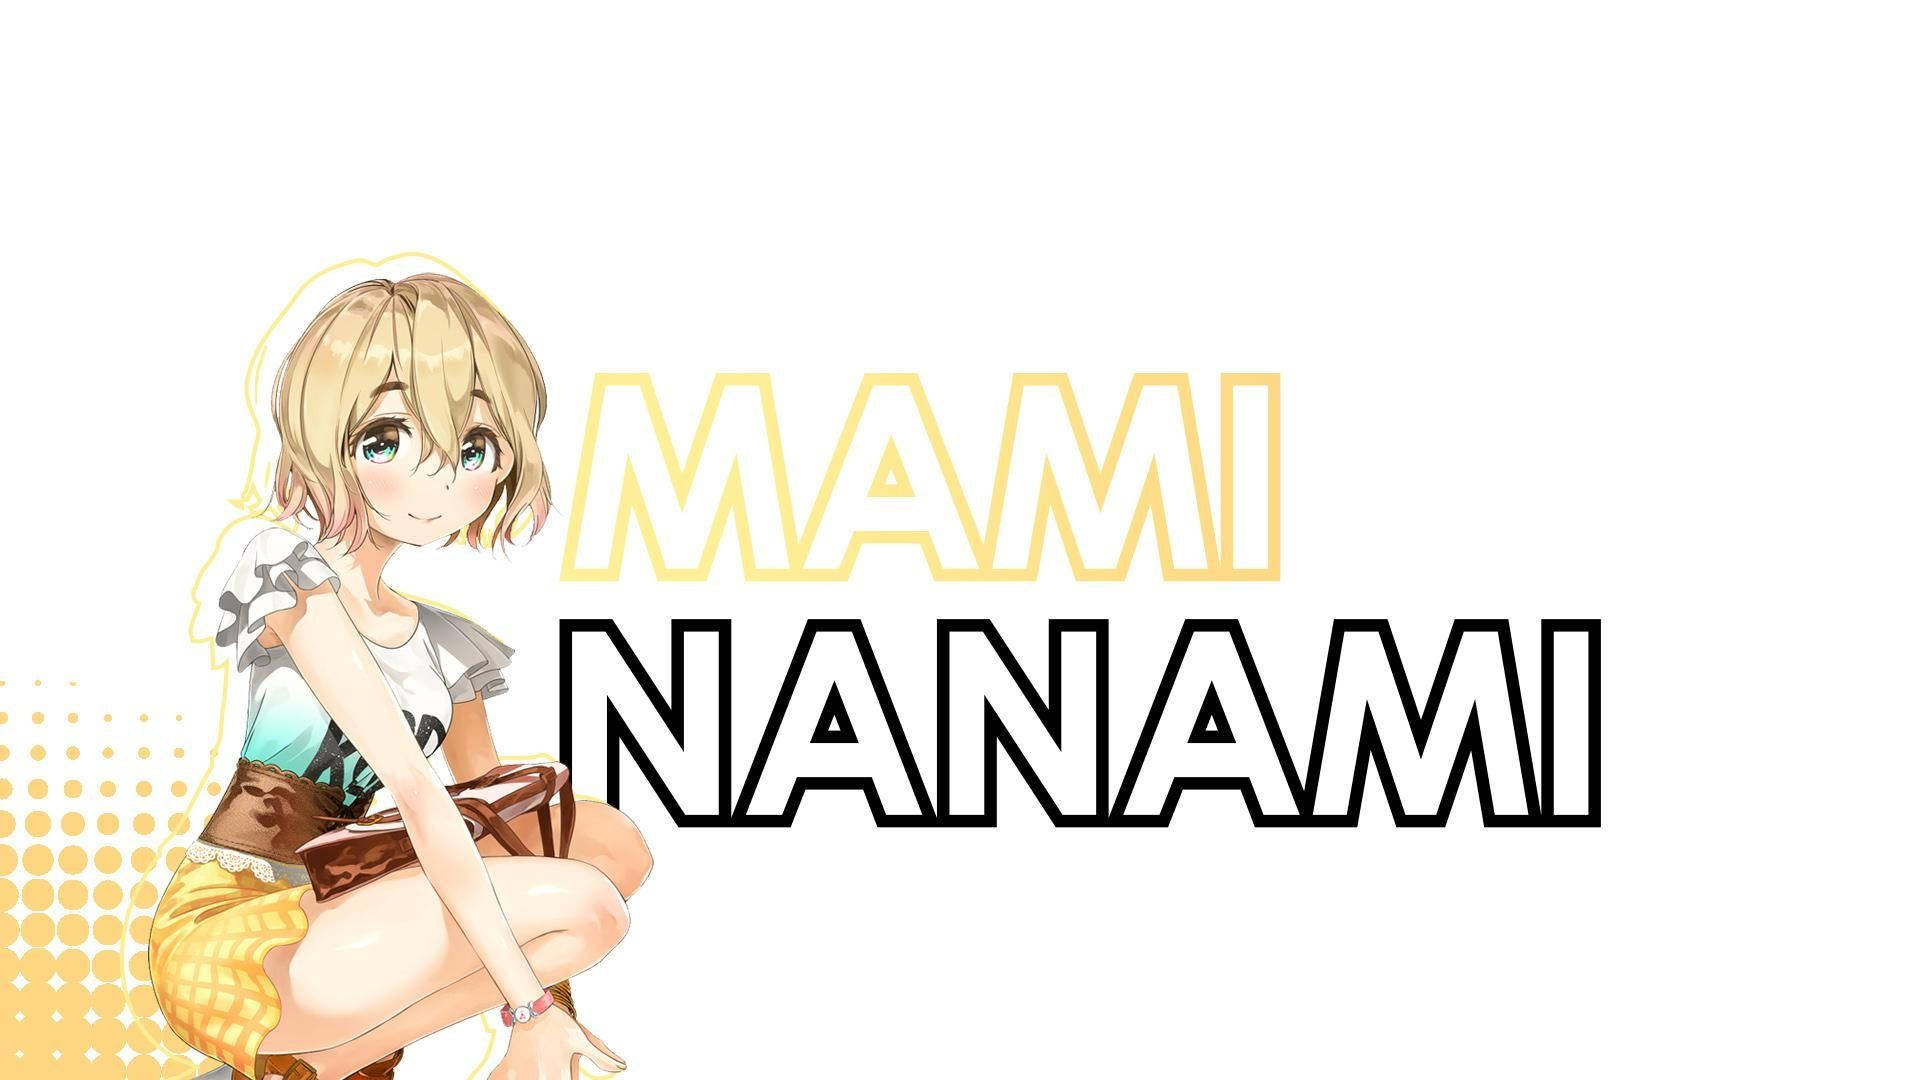 Rent A Girlfriend Mami Nanami Anime Wallpaper